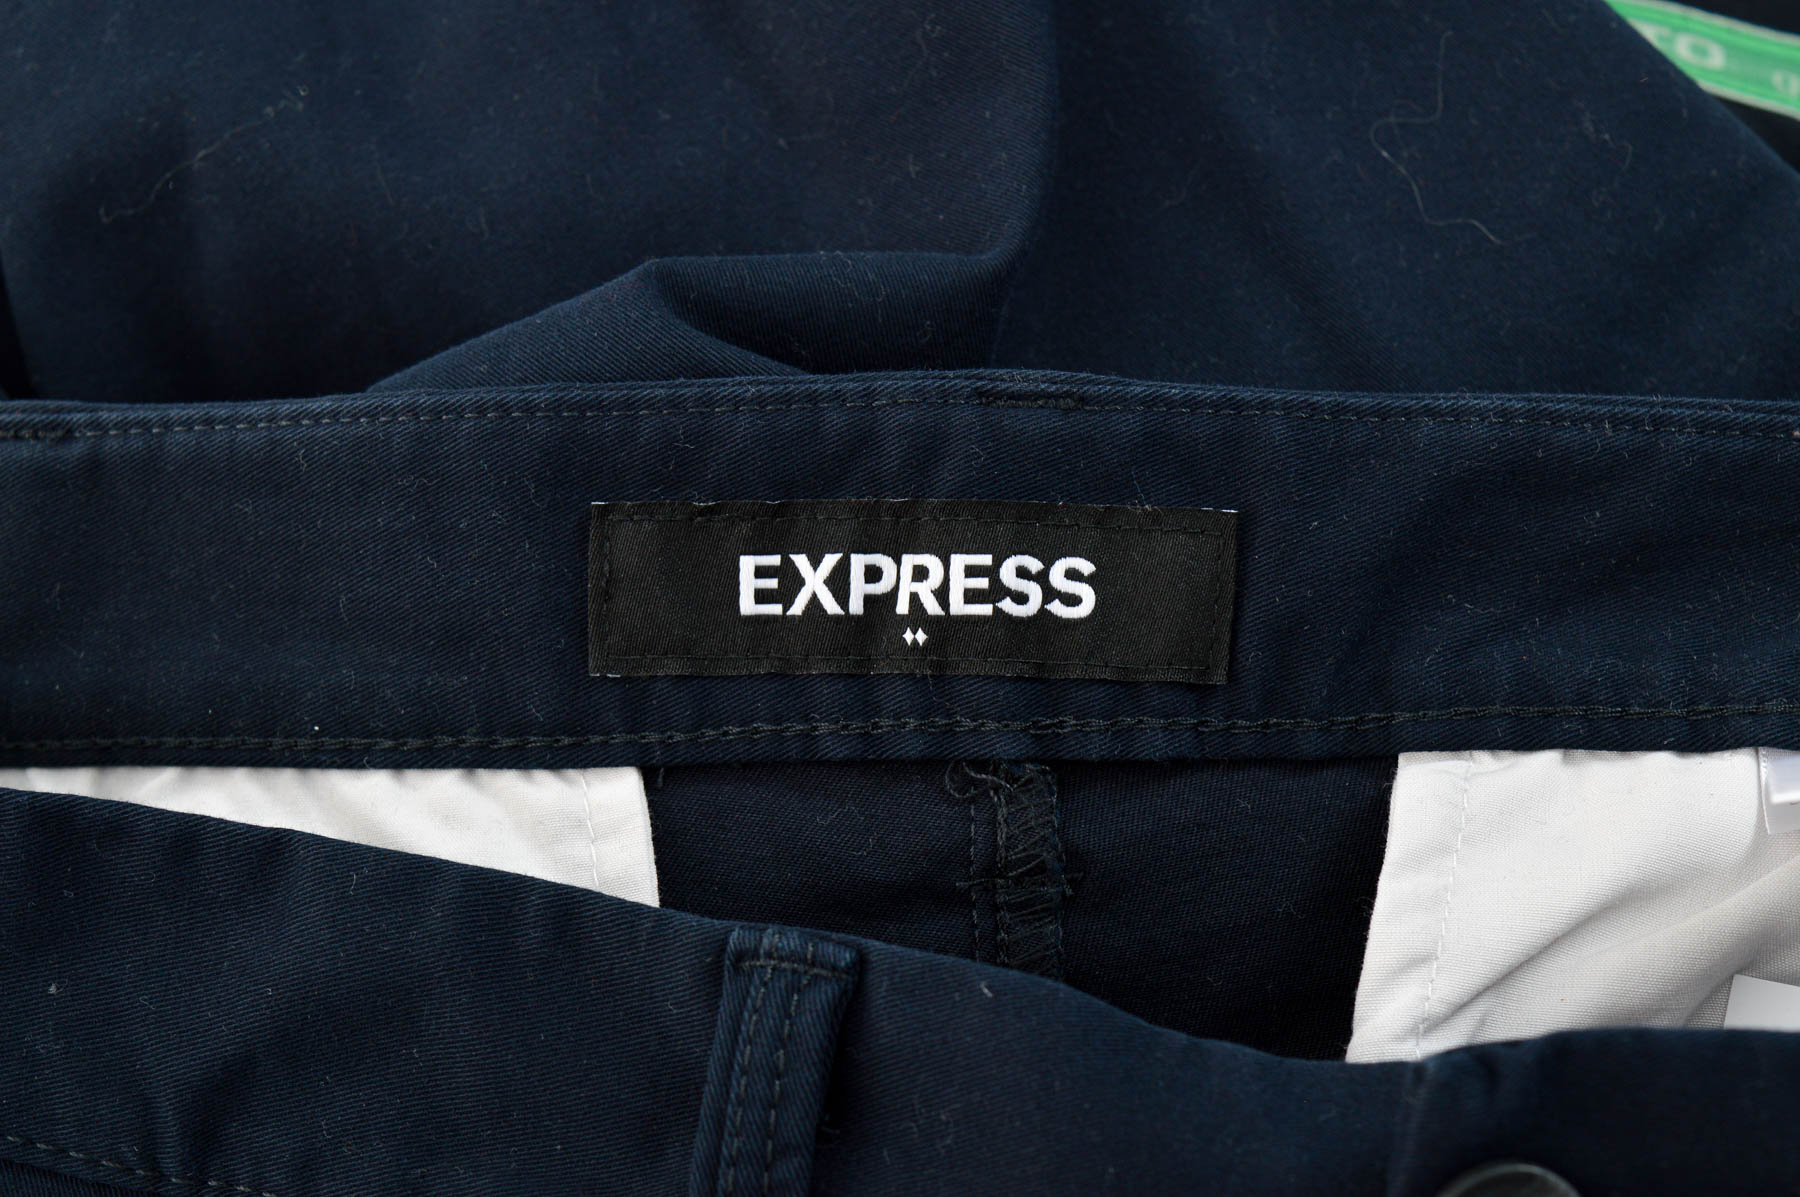 Pantalon pentru bărbați - Express - 2